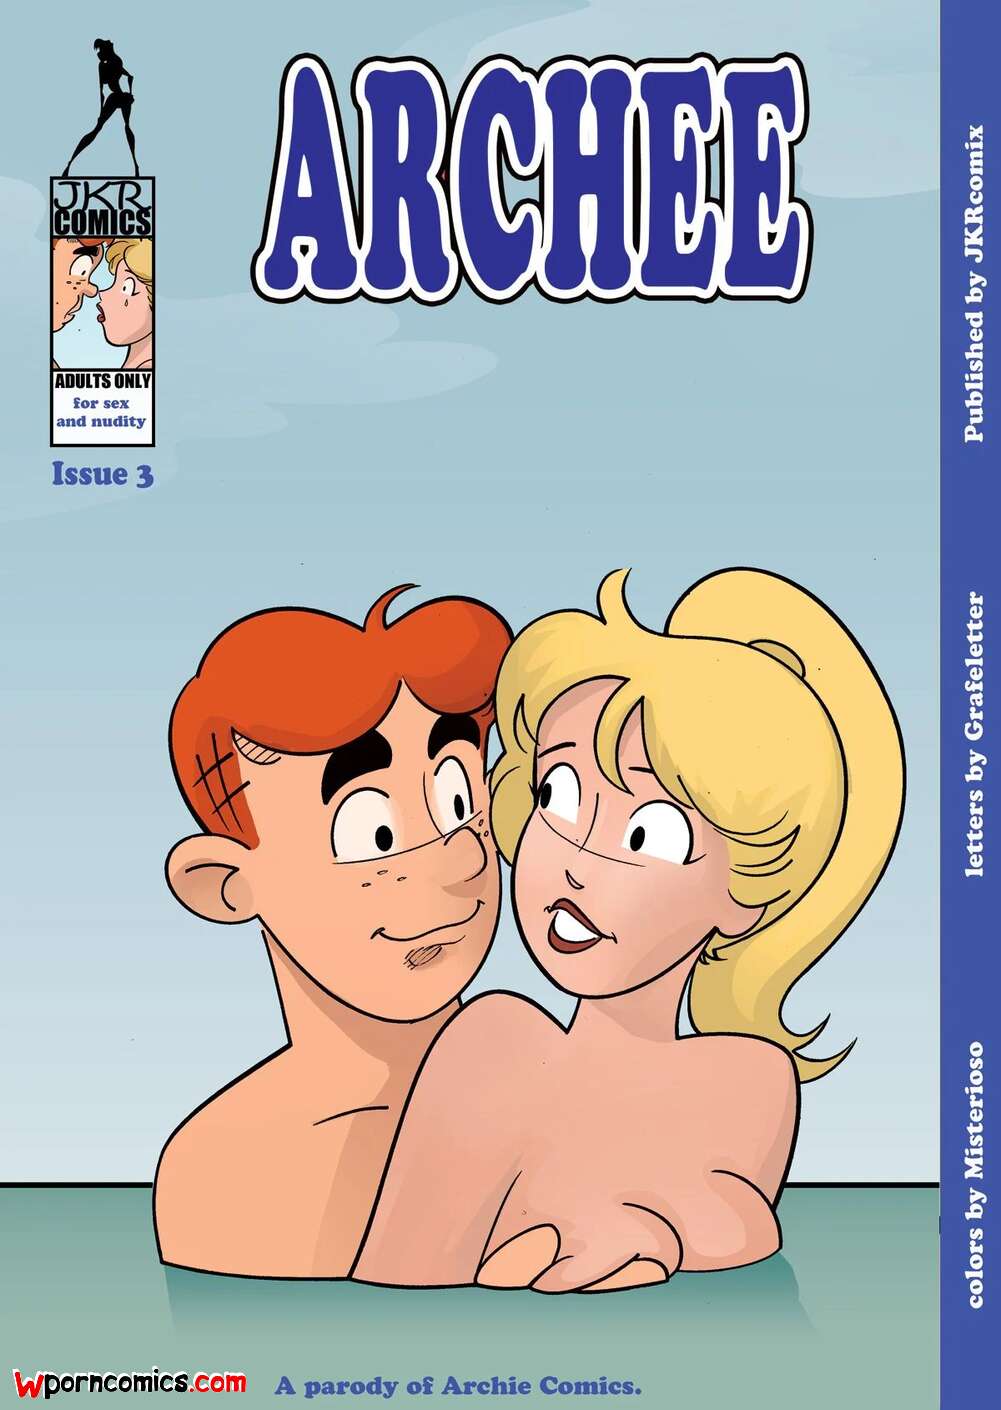 Archie Cartoon Sex - âœ…ï¸ Porn comic Archee. Chapter 3. Archies. JKRComix. Sex comic boy went with  | Porn comics in English for adults only | sexkomix2.com